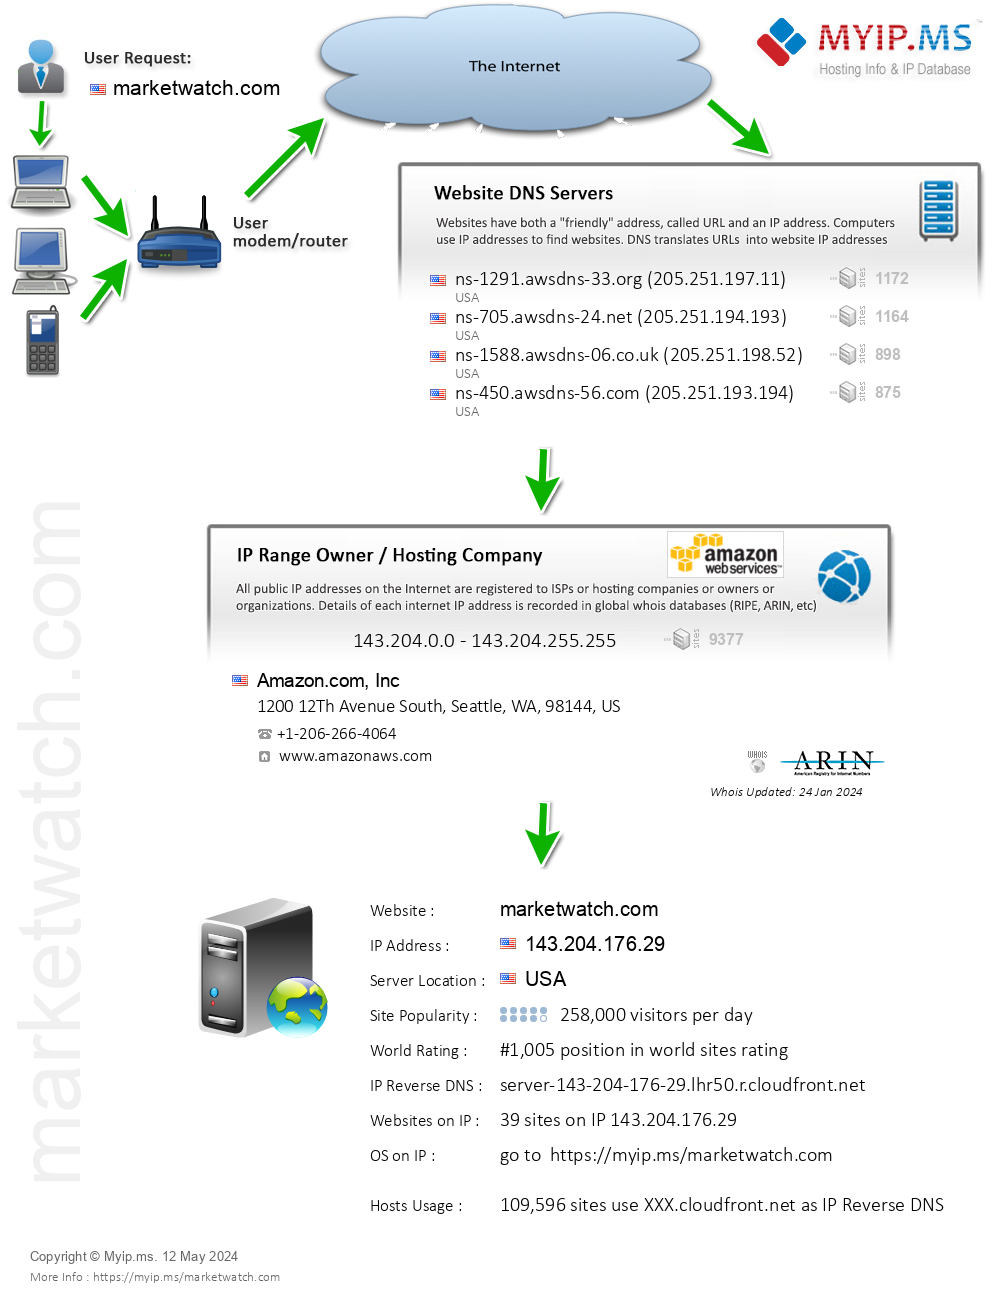 Marketwatch.com - Website Hosting Visual IP Diagram